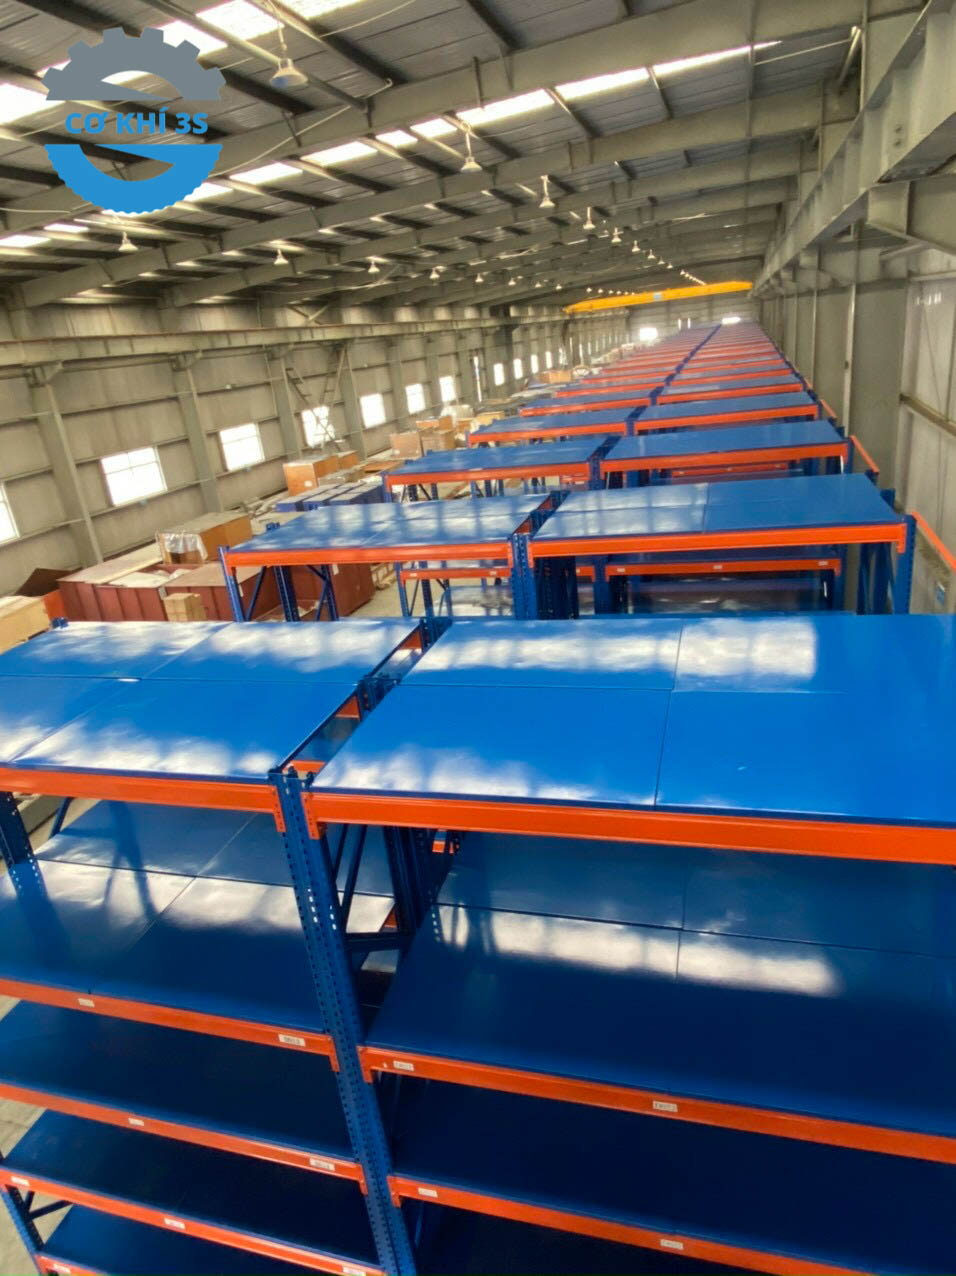 Dự án Kệ hạng nặng sàn tôn - Kệ để hàng nặng tại nhà máy Việt Mỹ Hưng Yên